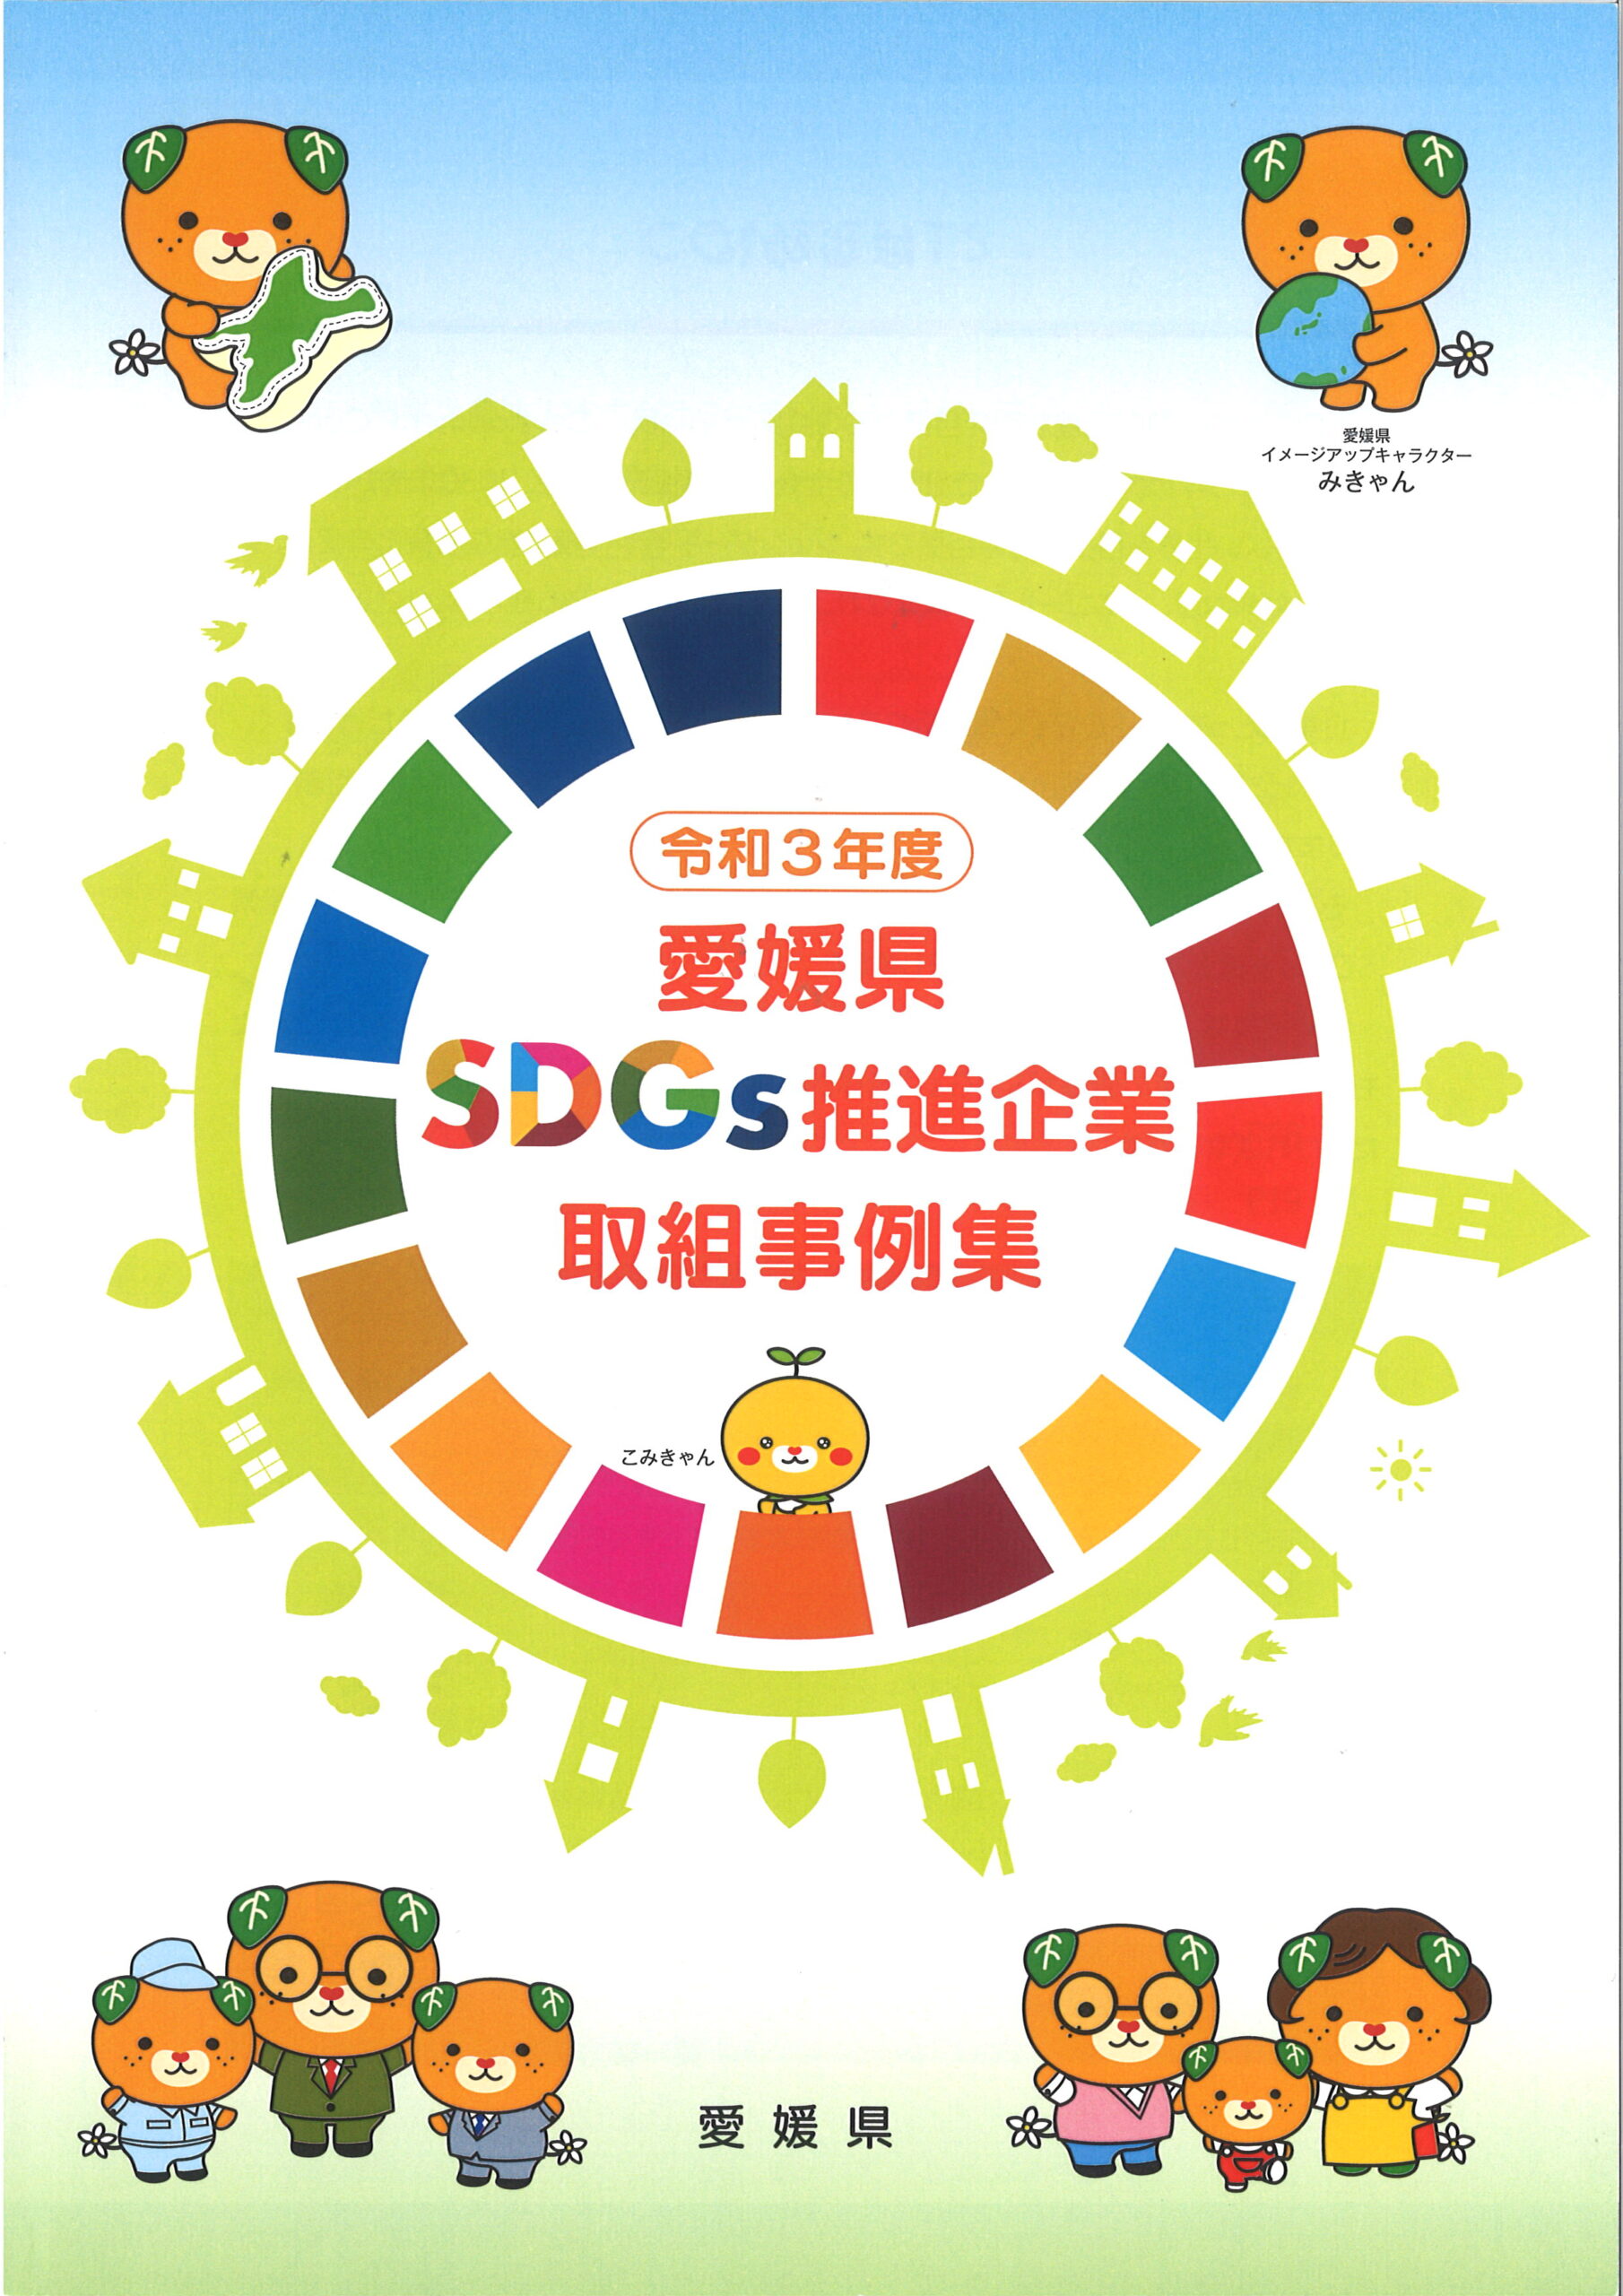 SDGs推進企業取組事例集で紹介されました。スライド01